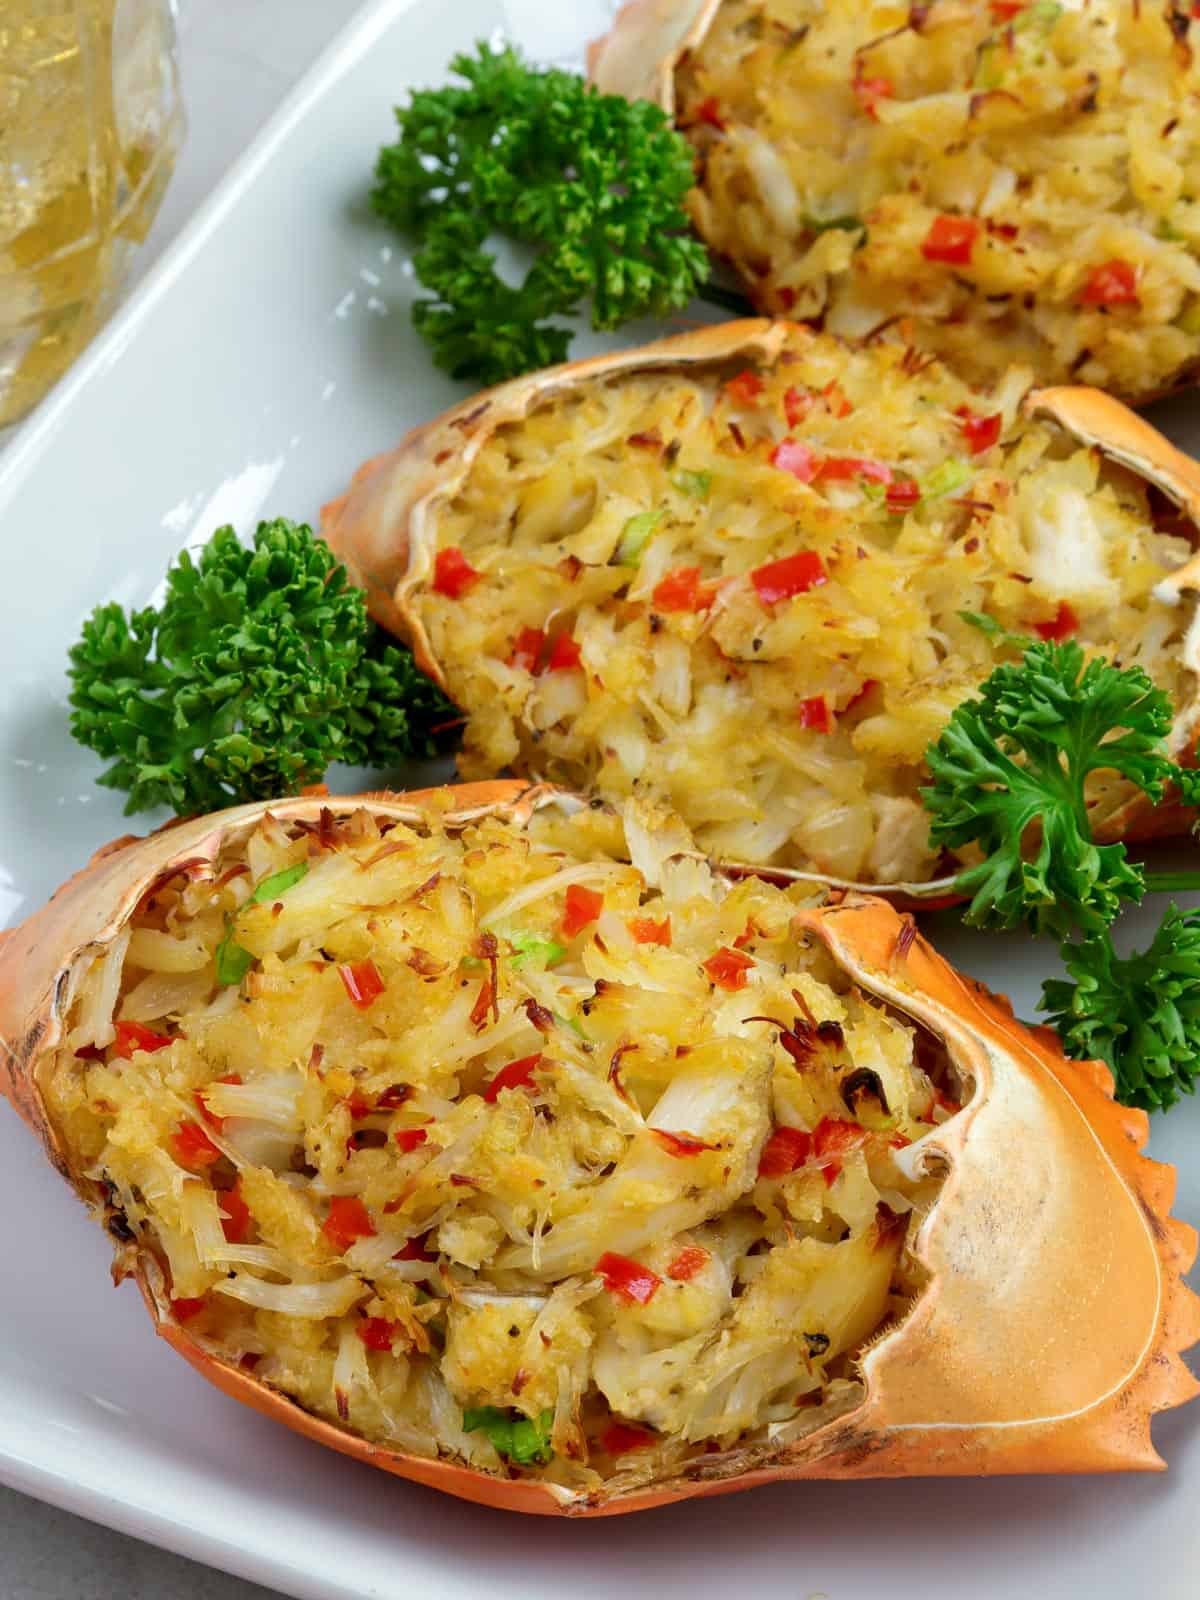 Filipino-style stuffed crab shells on a white serving platter.